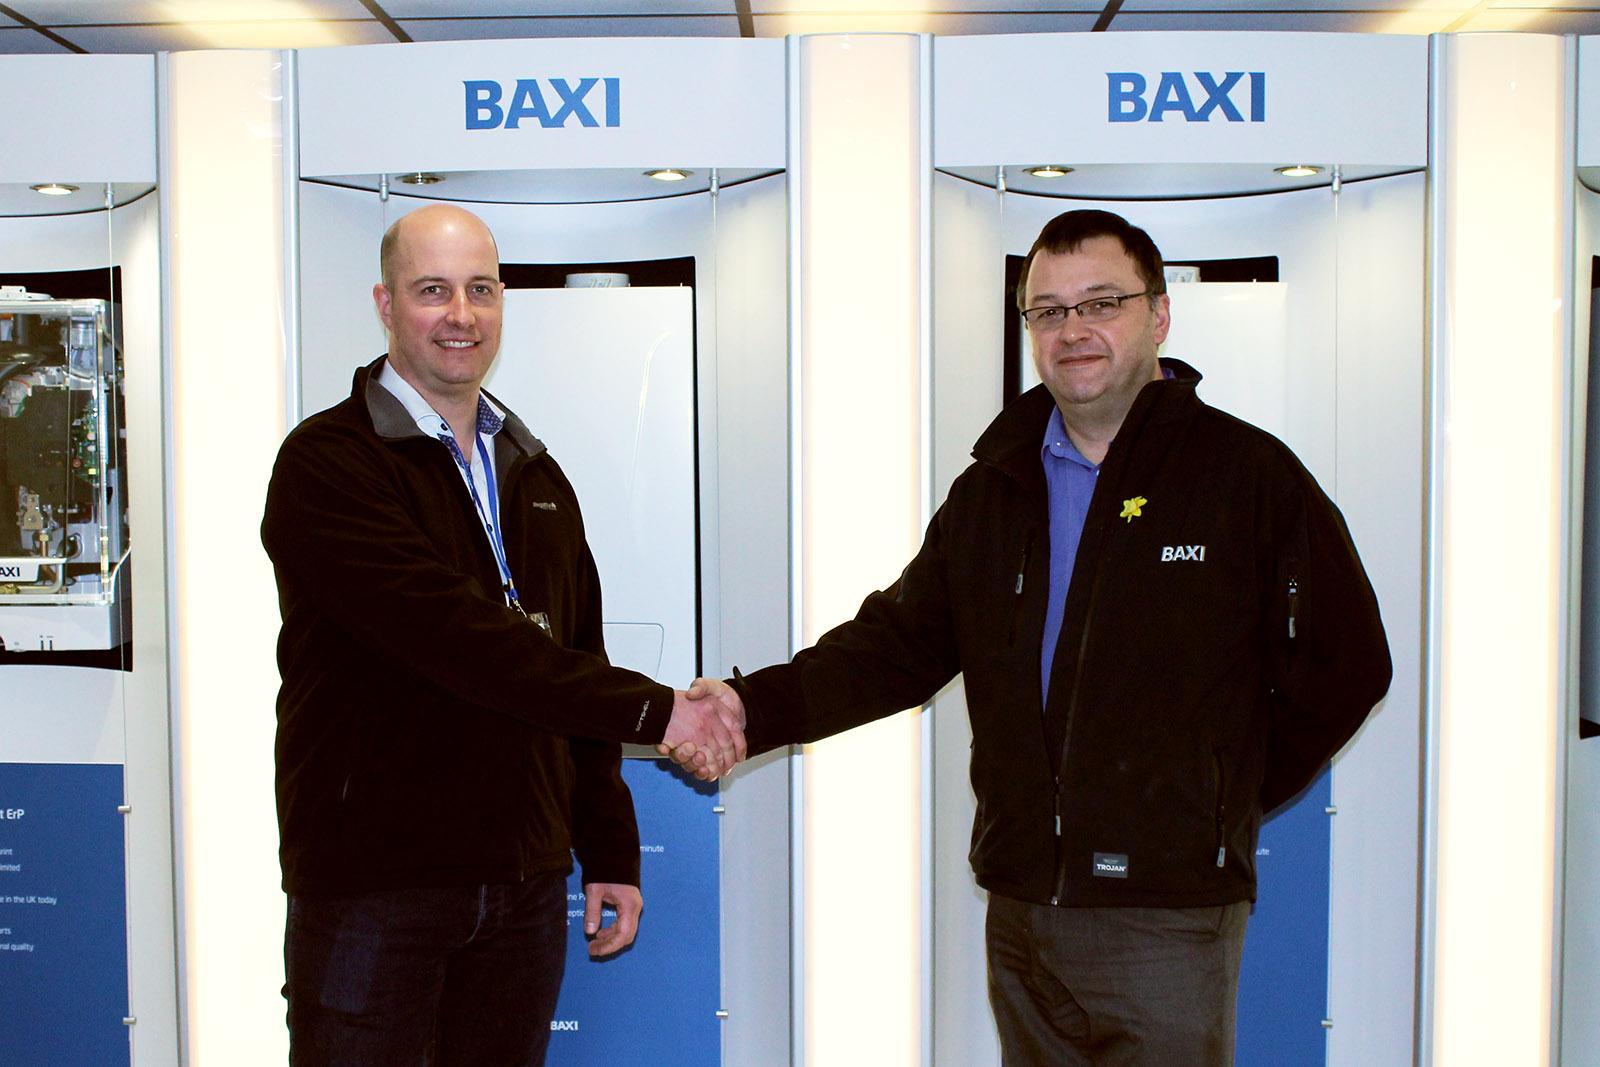 Baxi社技術サポートのポール・クレイトン（Paul Clayton）氏と当社のセールス・アフターサービス担当マネージャー、クリスチャン・ライト（Christian Wright）。